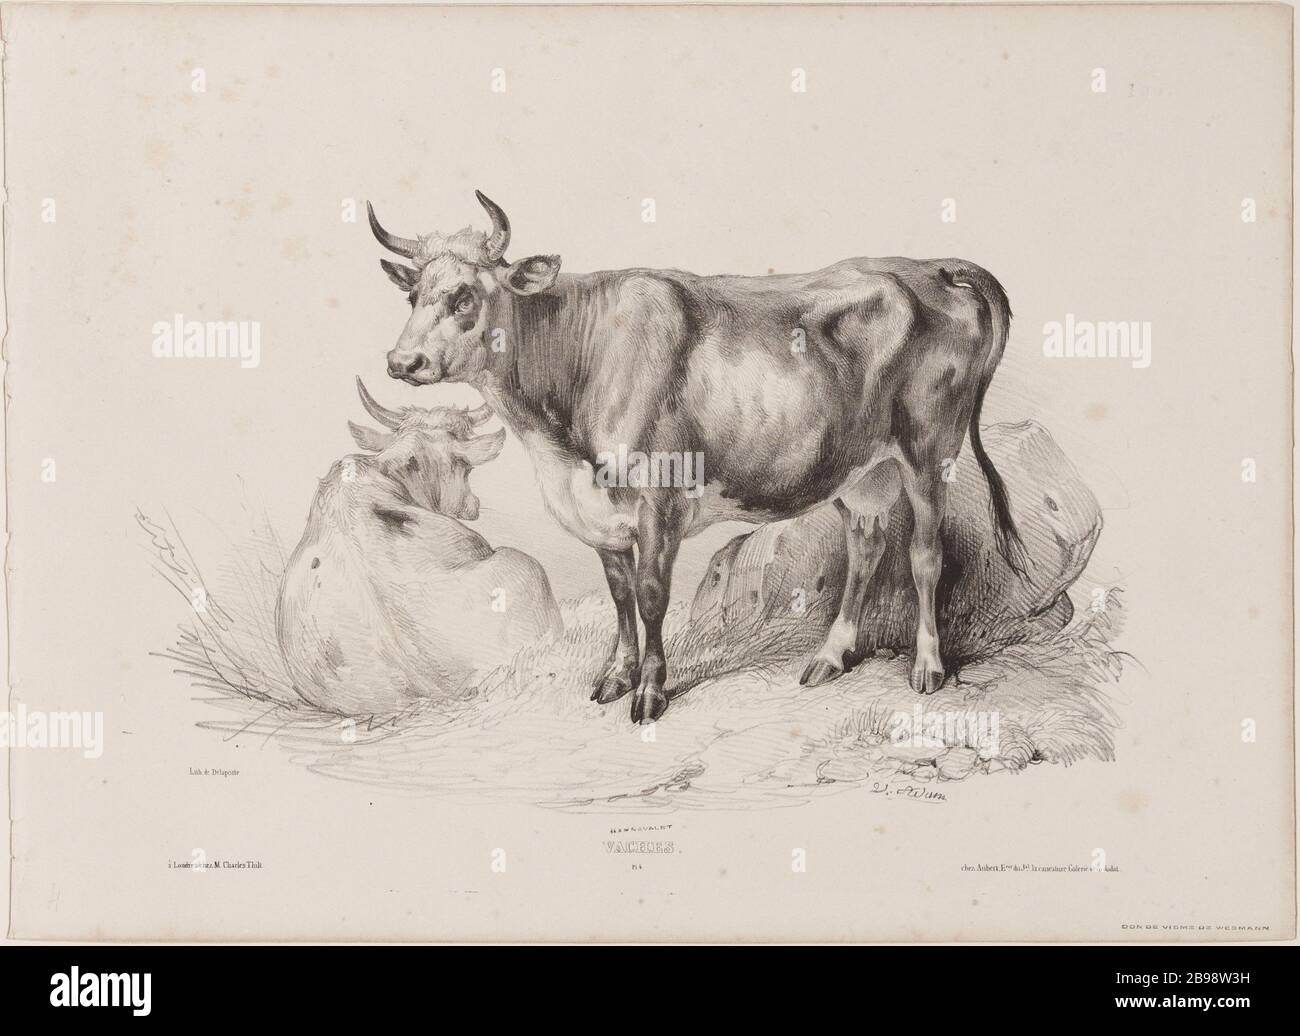 Cows (pl.4) Jean-Victor Vincent Adam (1801-1866), peintre et lithographe français. Vaches (pl.4). Lithographie au crayon, XIXème siècle. Paris, musée Carnavalet. Stock Photo